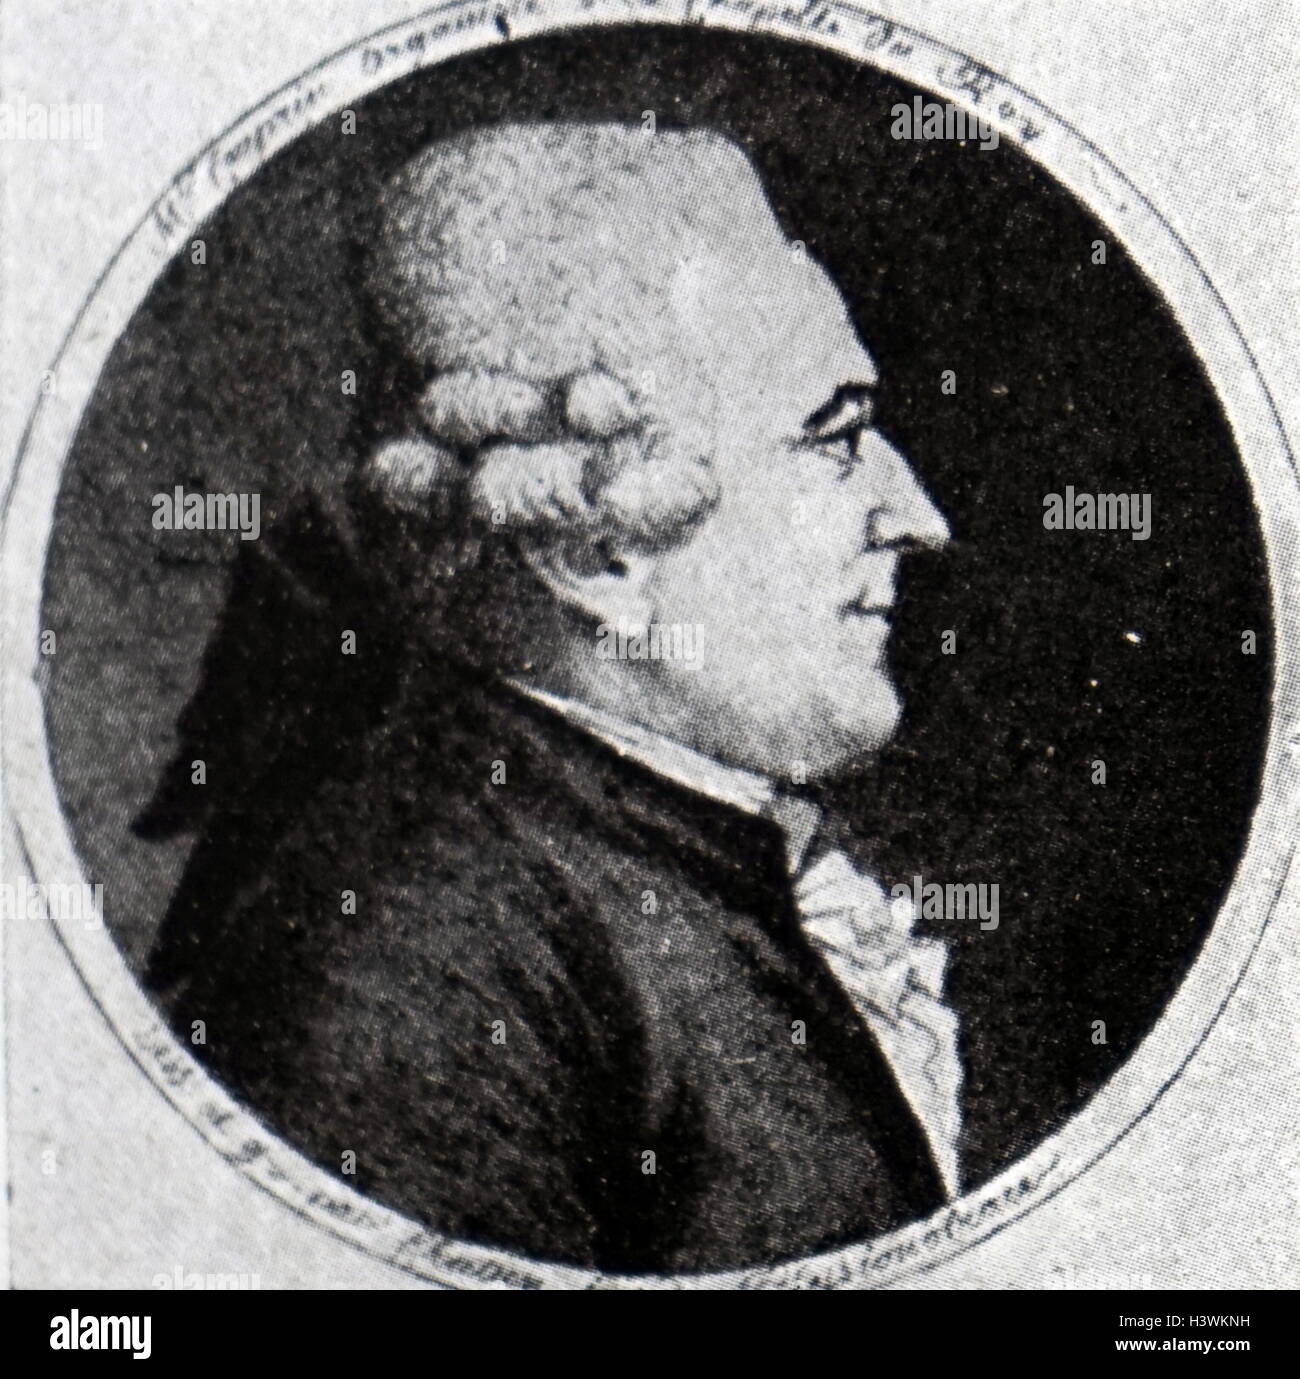 Ritratto di Armand-Louis Couperin (1727-1789) un compositore francese, organista e clavicembalista del tardo barocco e primi periodi Classico. Datata xviii secolo Foto Stock